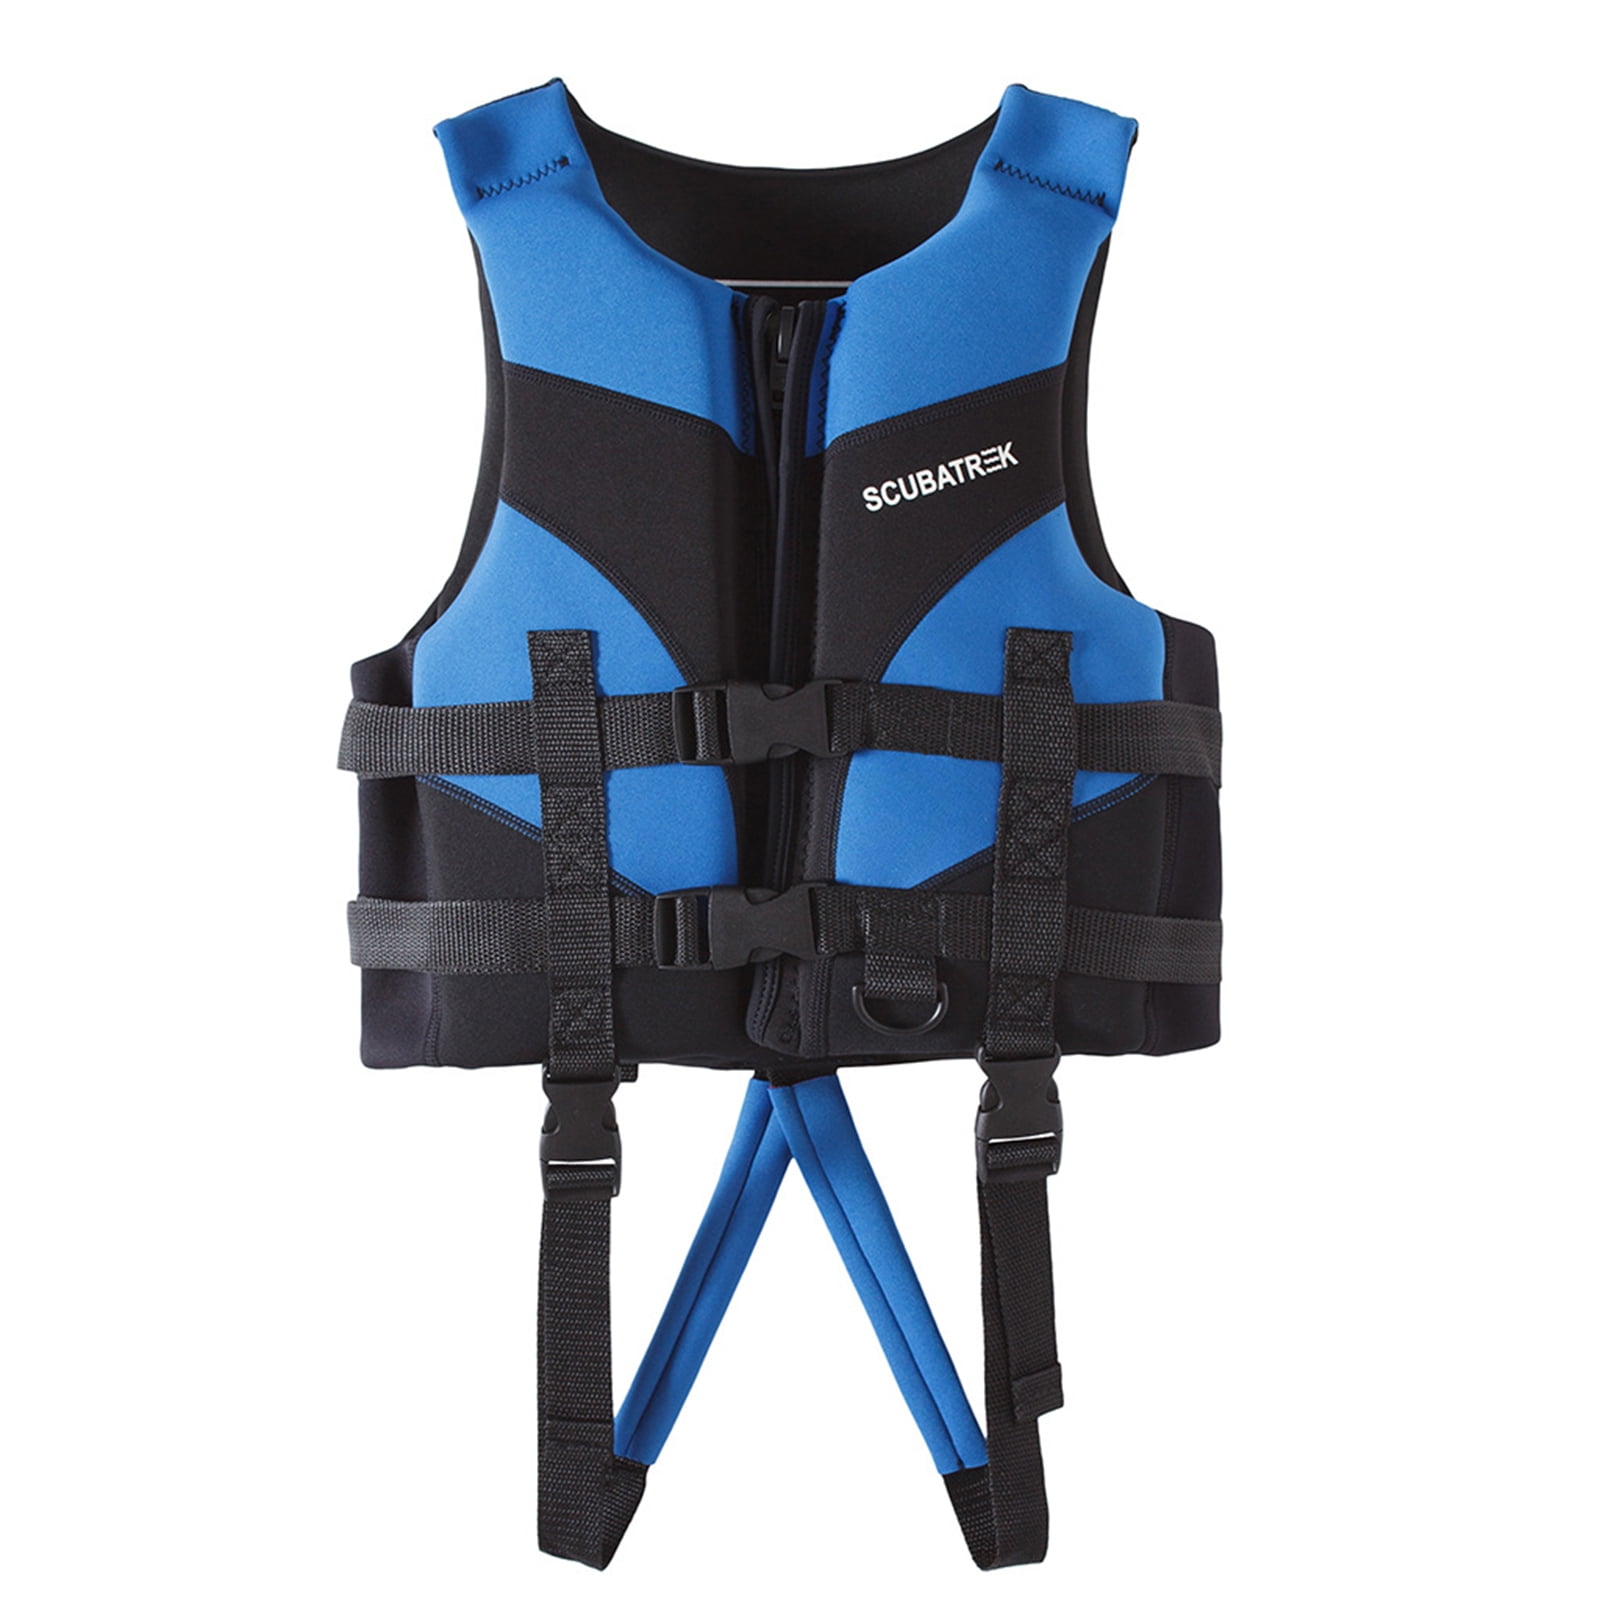 Child Kid Float Vest Buoyancy Life Safety Jacket Baby Swim Aid Waistcoat Age 2-7 